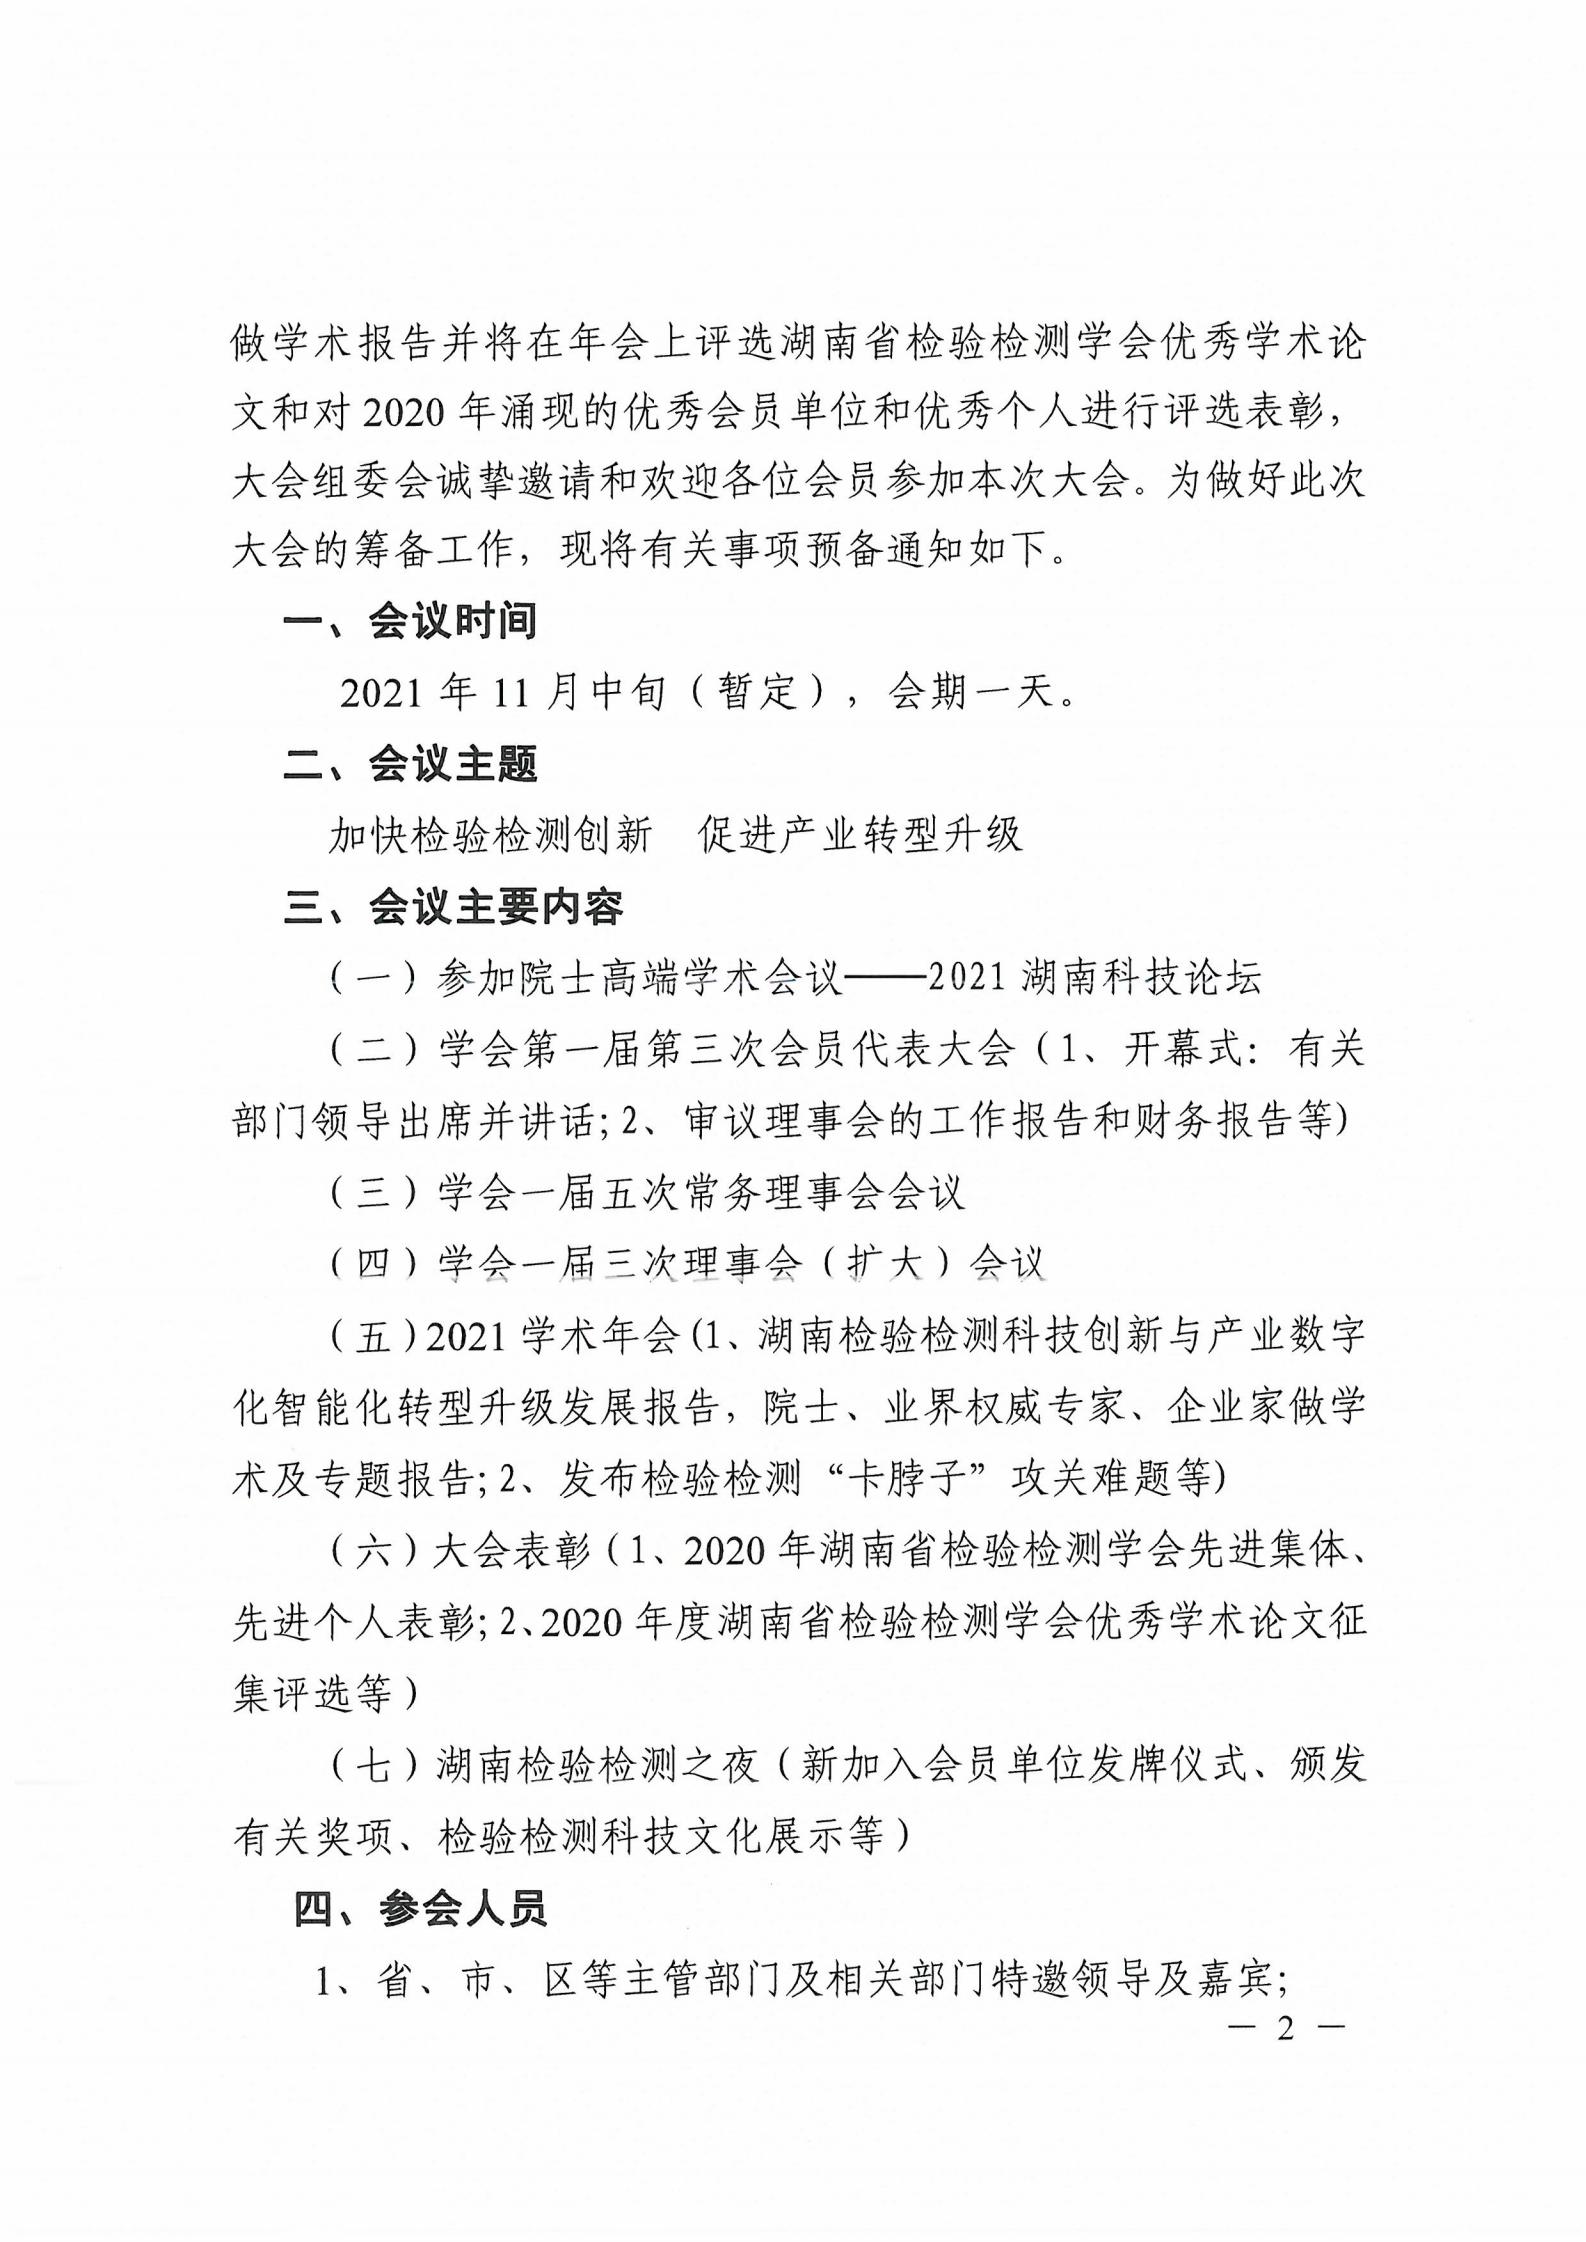 【会议通知】关于召开湖南省检验检测学会一届三次会员代表大会暨2021学术年会的预通知(图2)